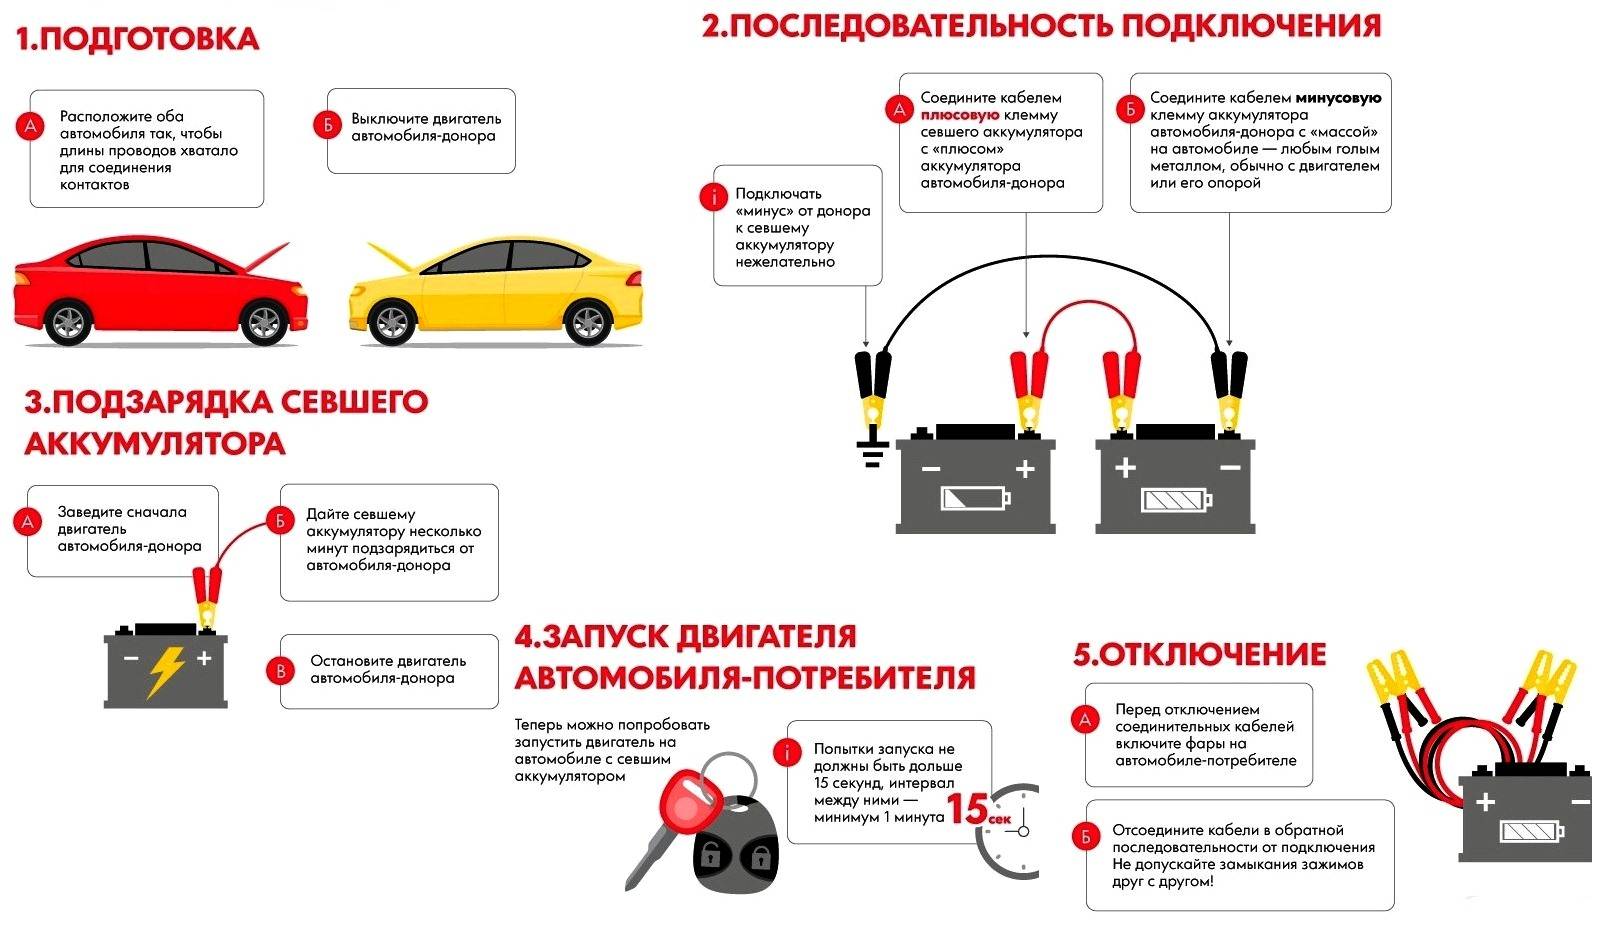 Заводим машину с севшим аккумулятором | auto-gl.ru